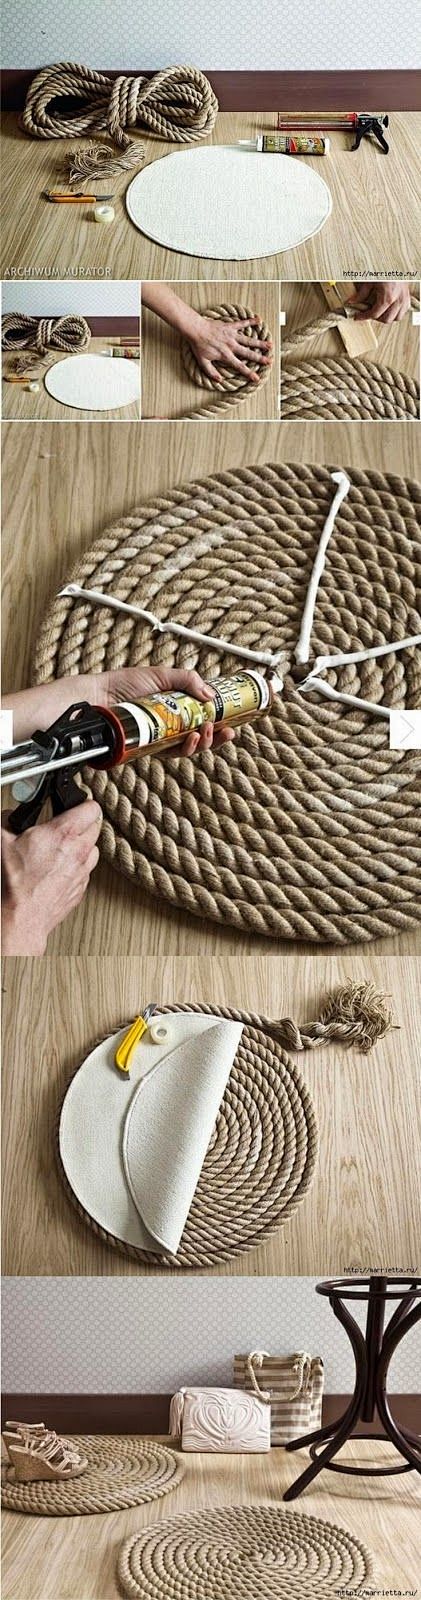 DIY绳索地毯  想要制作垂直悬挂植物